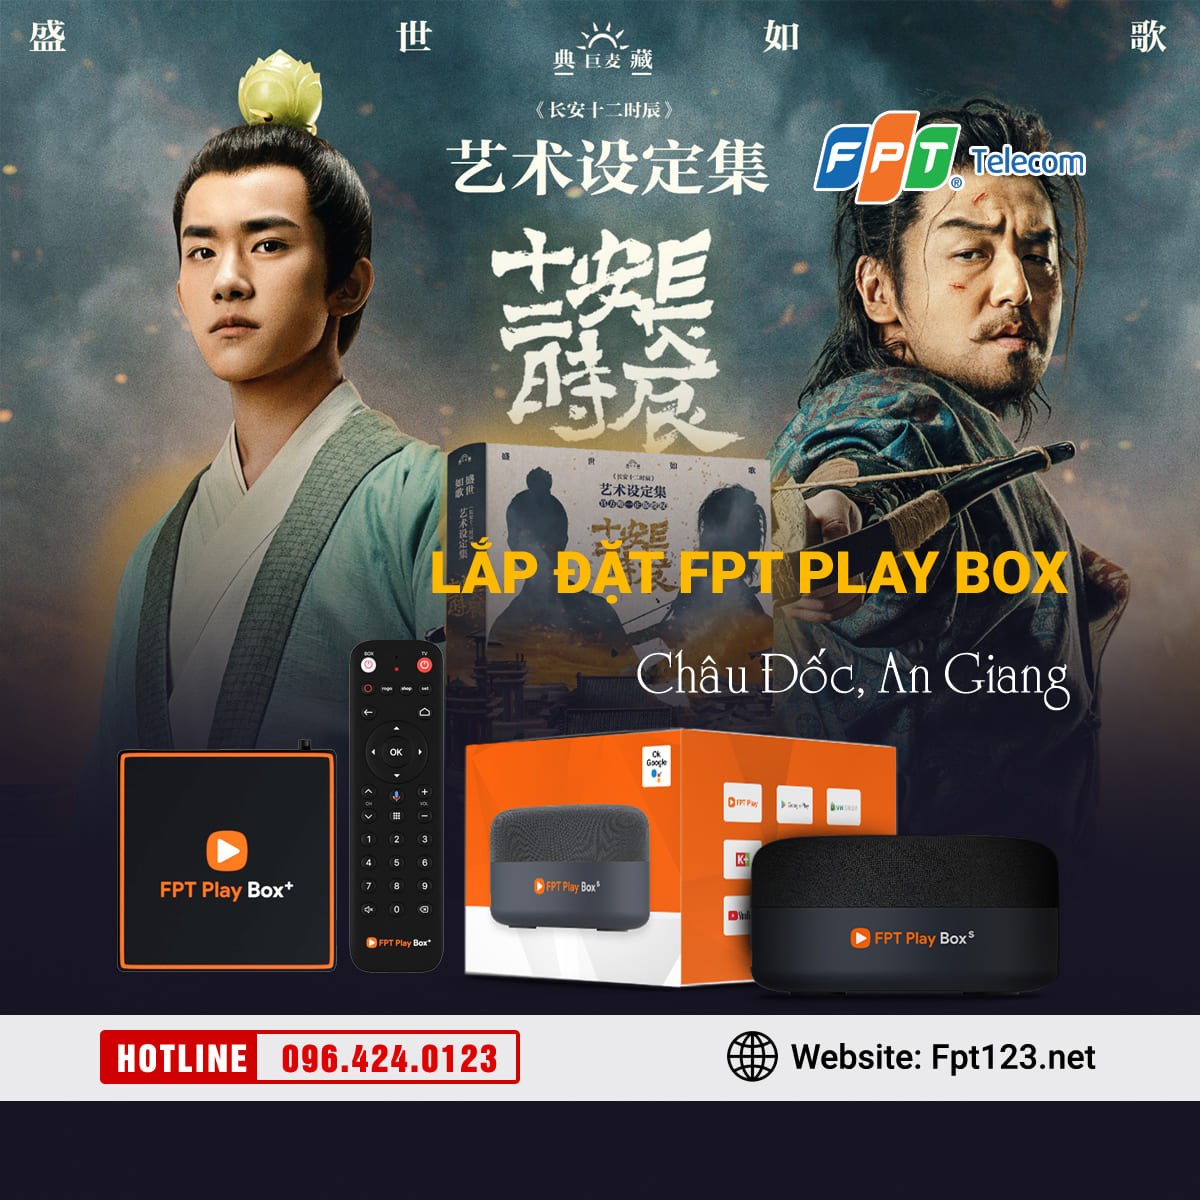 Lắp đặt FPT Play Box tại Châu Đốc, An Giang